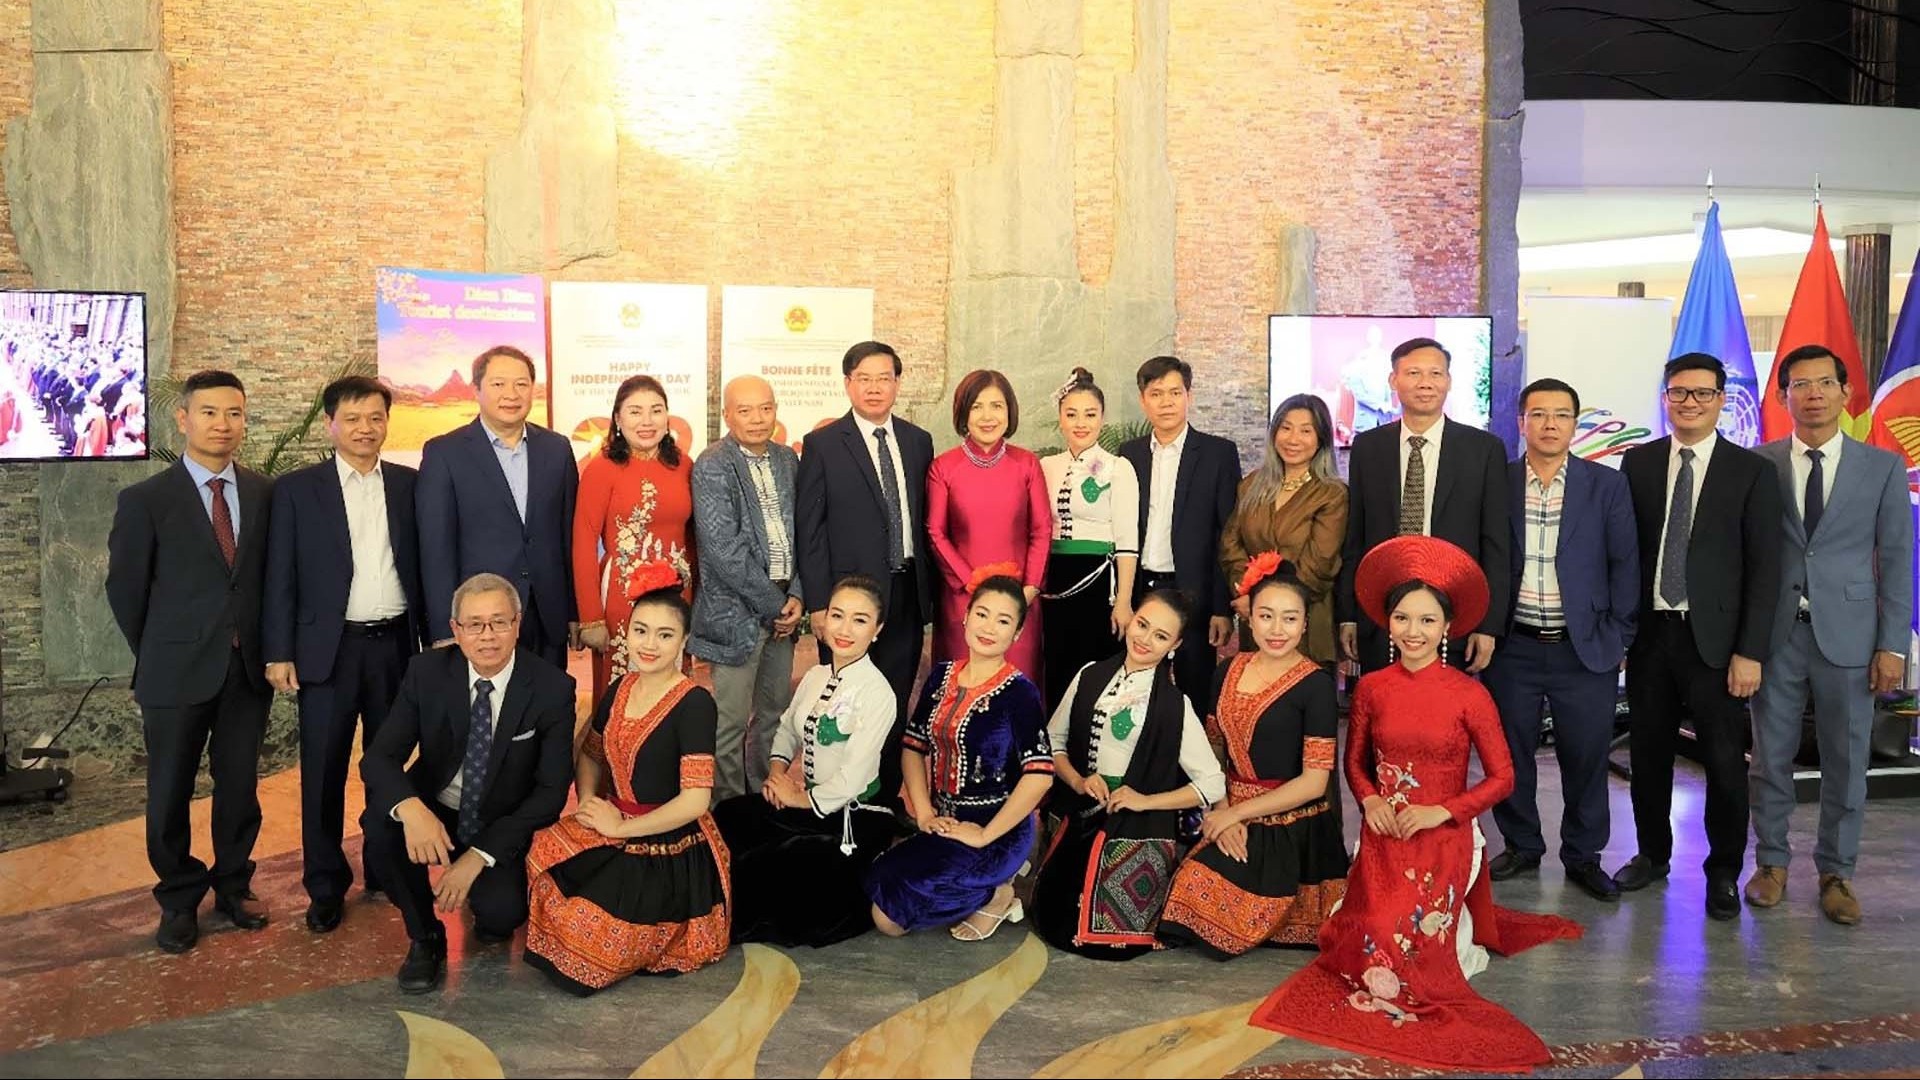 Triển lãm ảnh Việt Nam và giới thiệu tỉnh Điện Biên tại Geneva trong sự kiện văn hóa kỷ niệm Quốc khánh lần thứ 78